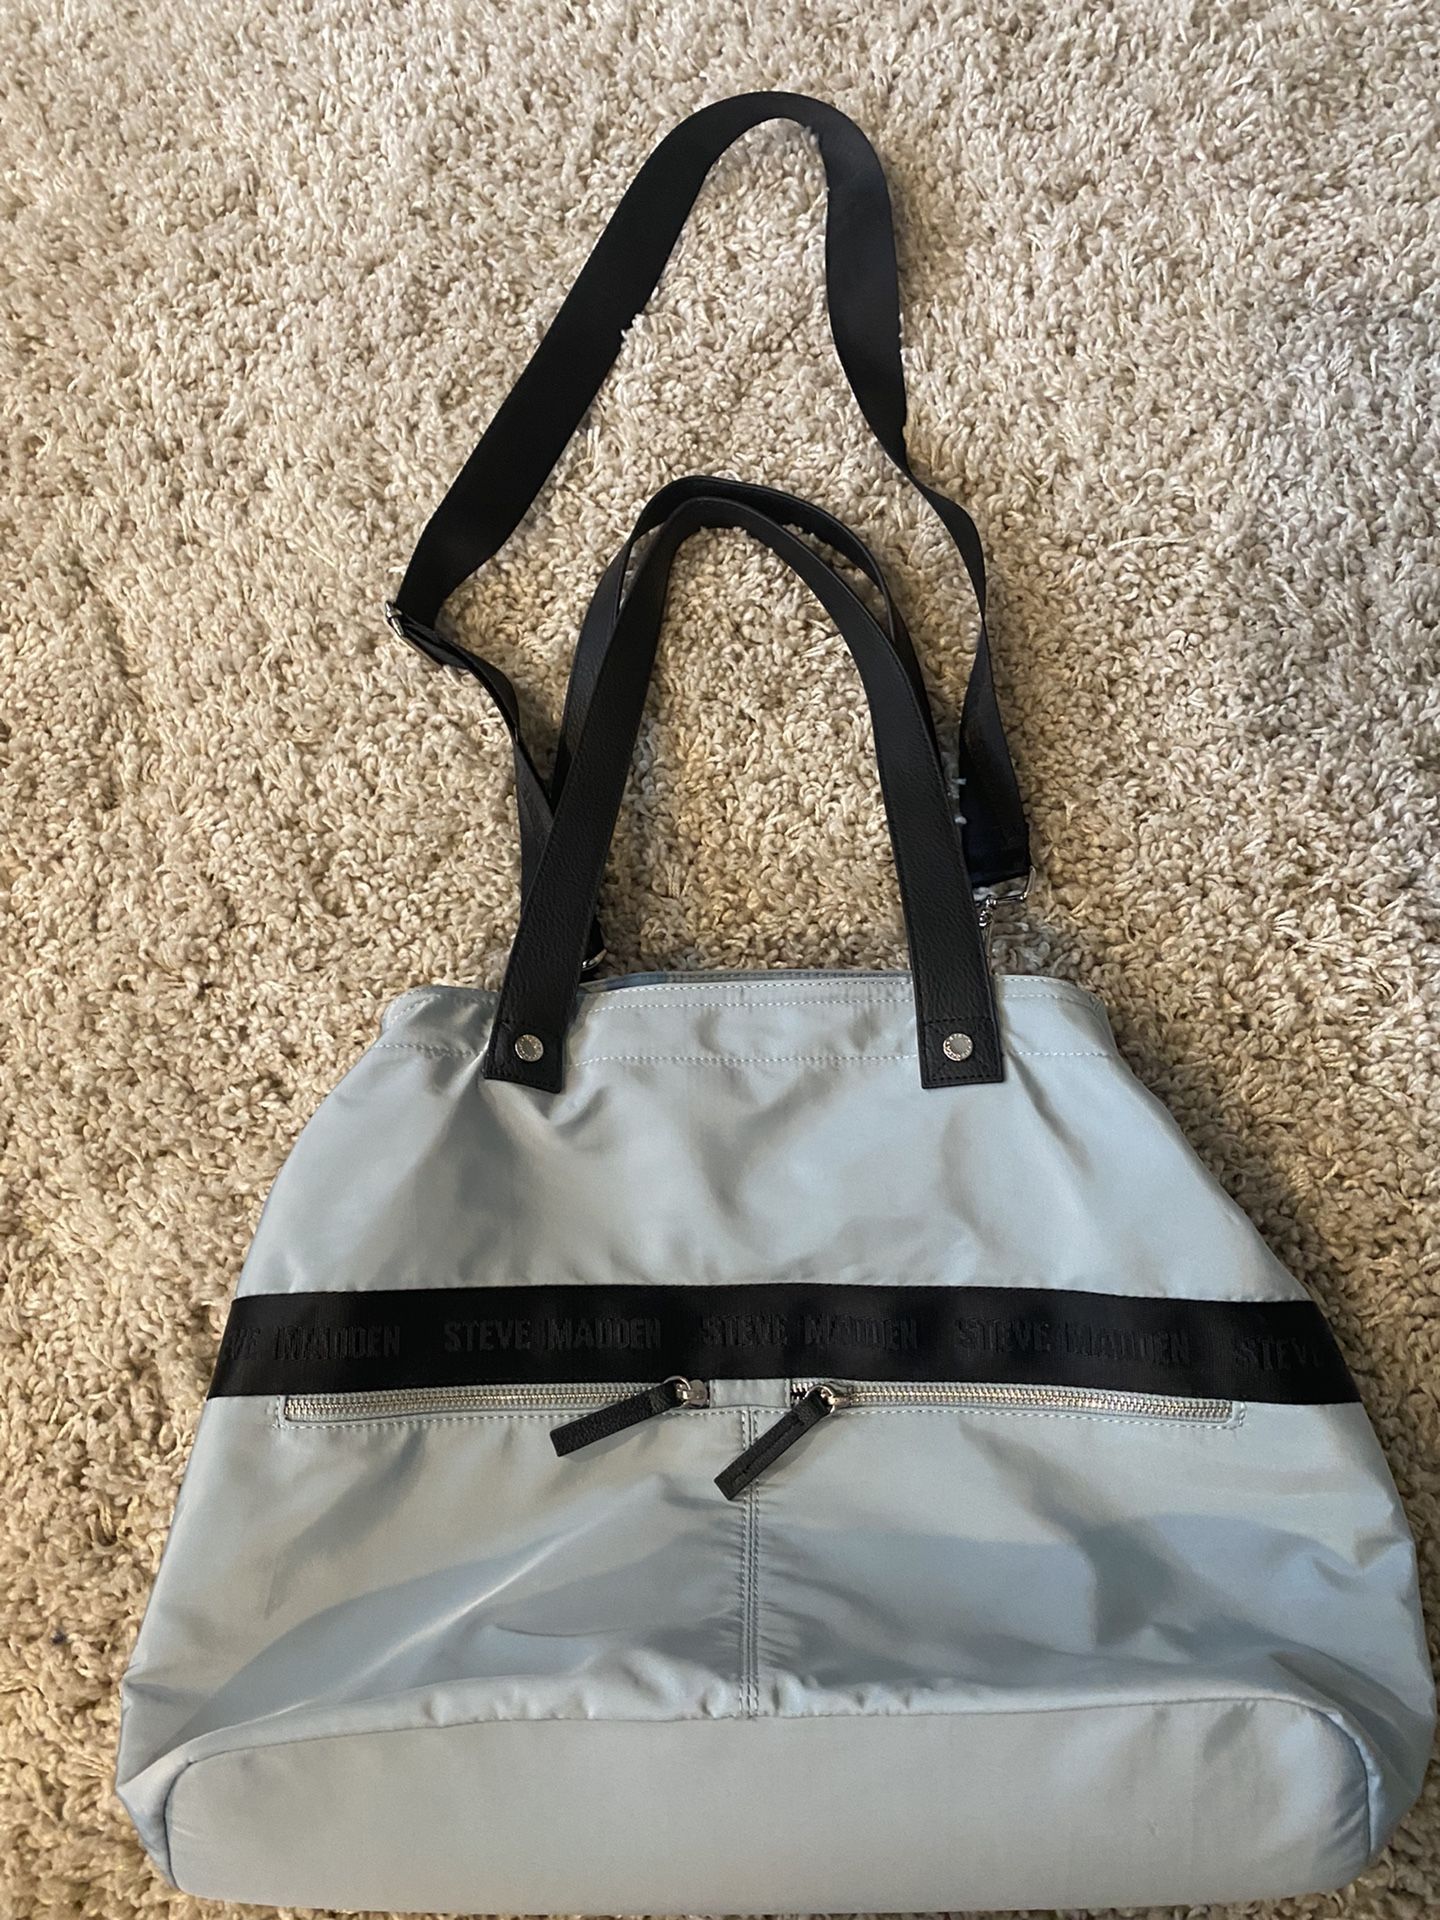 Steve Madden Weekender Bag for Sale in Riverside, CA - OfferUp